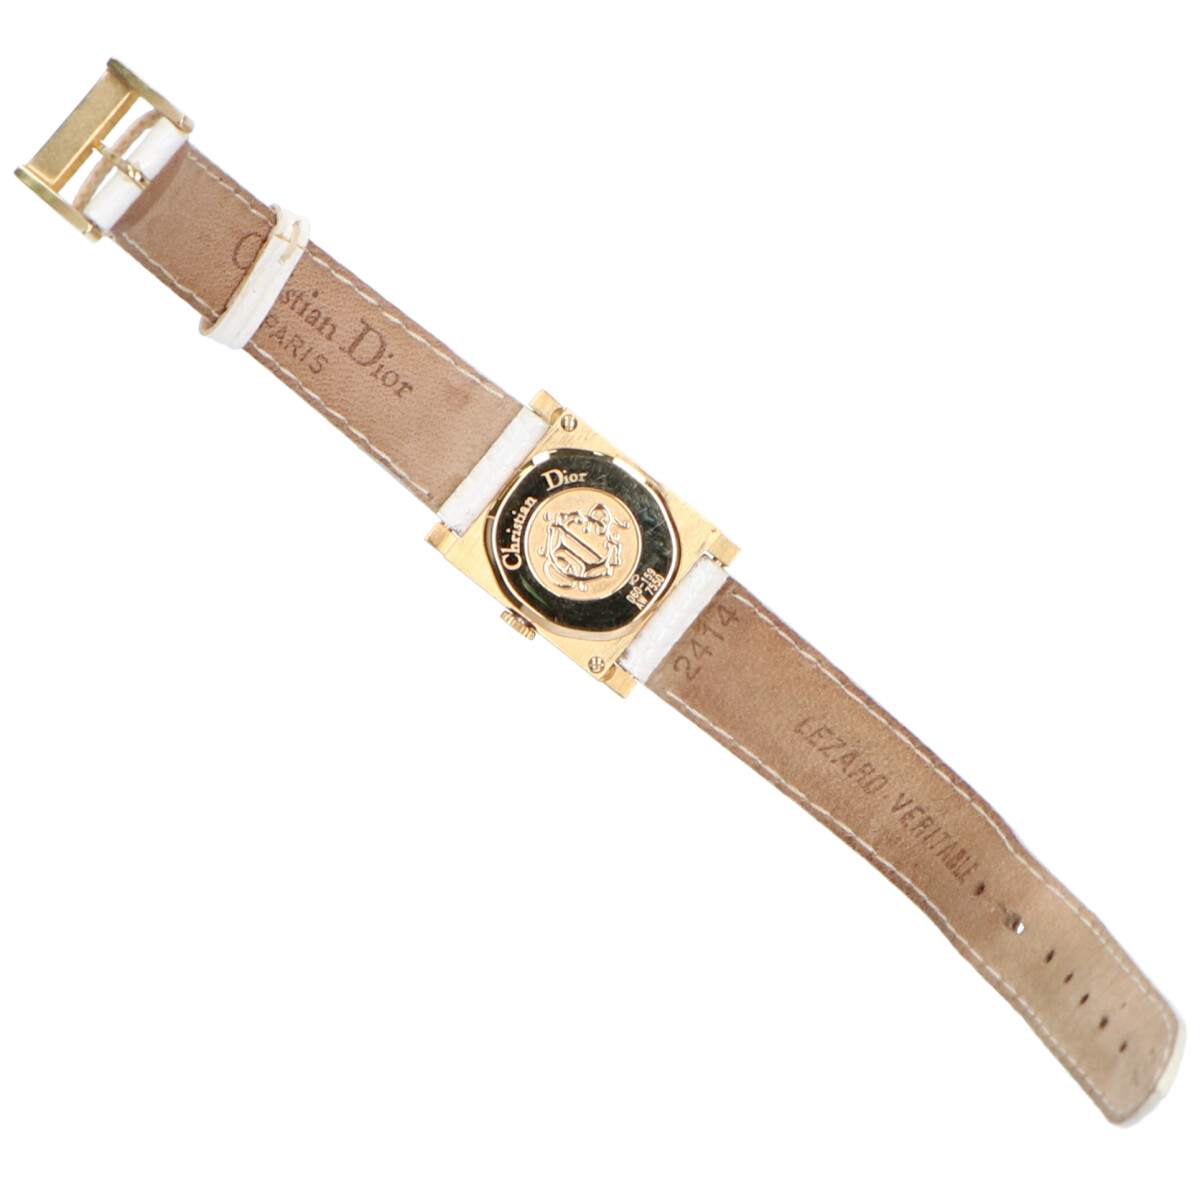 【楽天市場】Christian Dior クリスチャンディオール D60-159 ラ パリジェンヌ リザードレザーベルト クオーツ腕時計